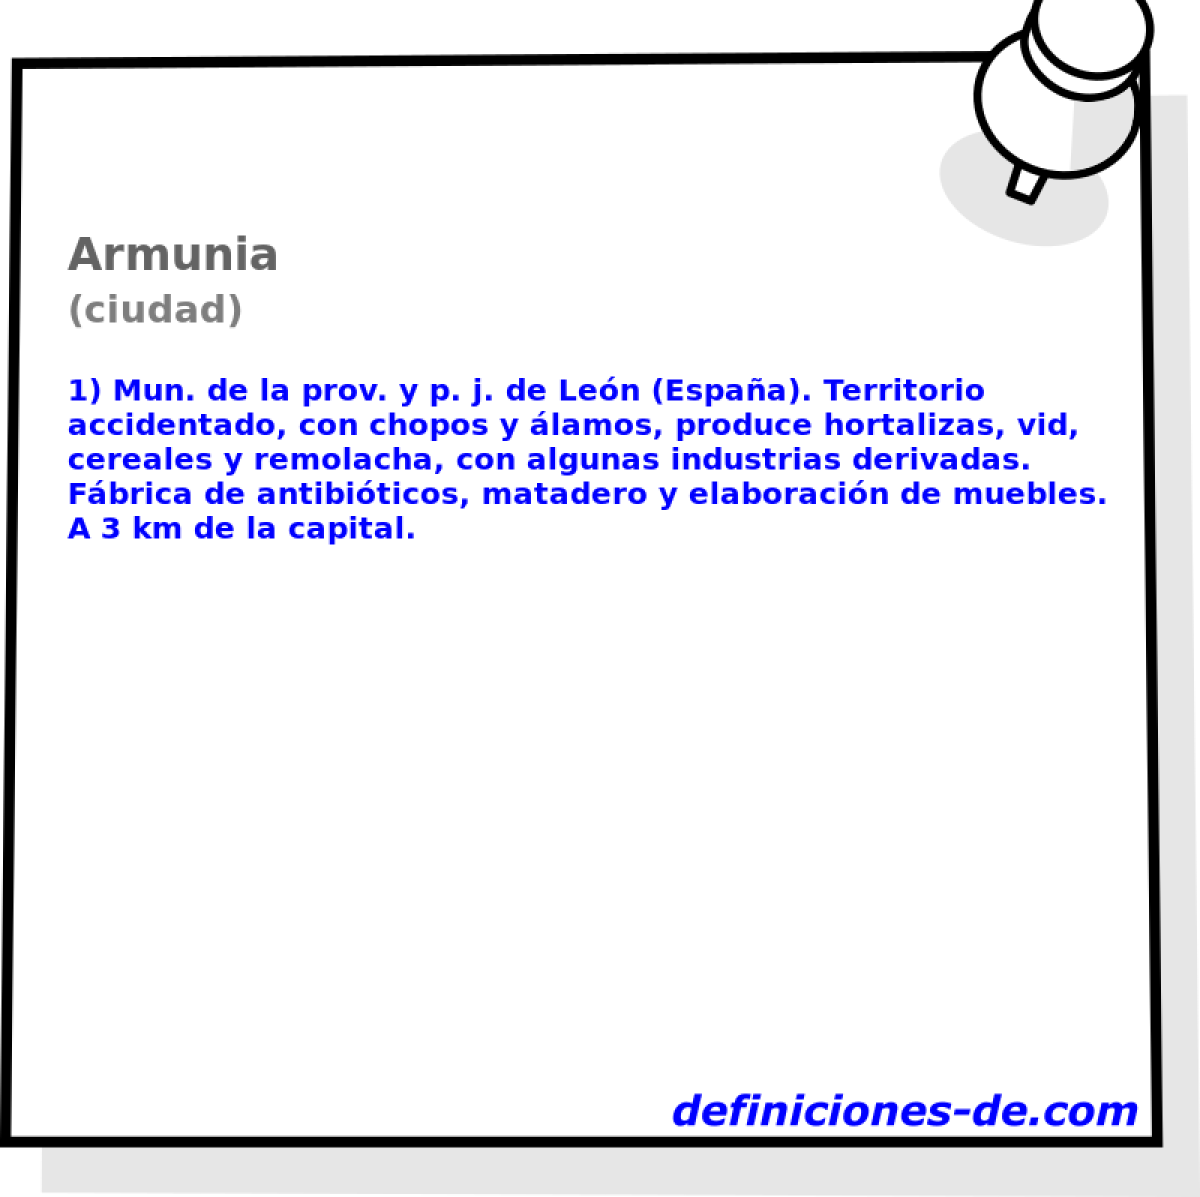 Armunia (ciudad)